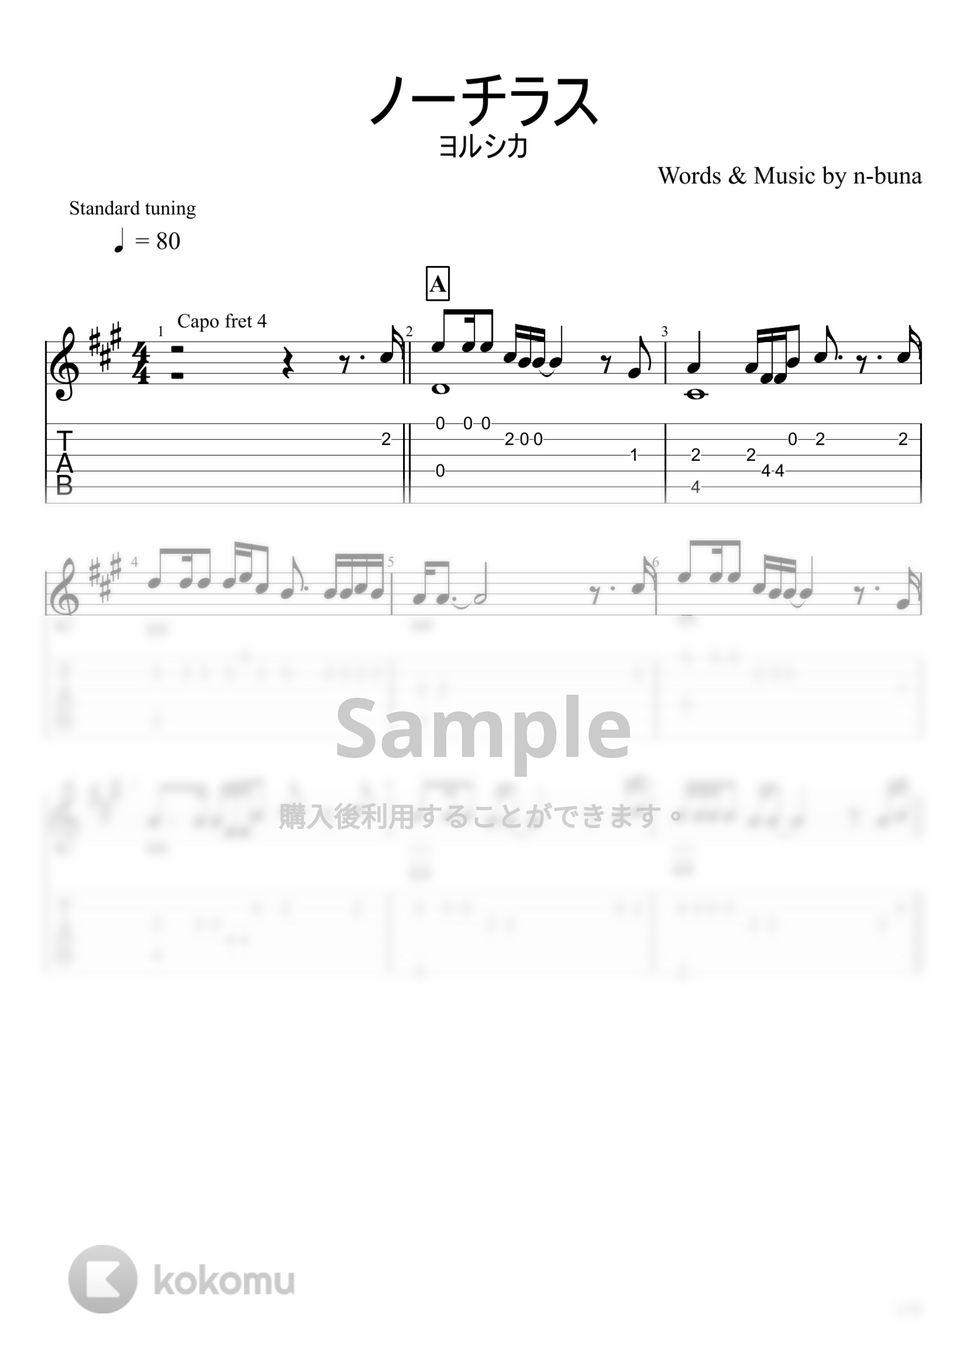 ヨルシカ - ノーチラス (ソロギター) by u3danchou